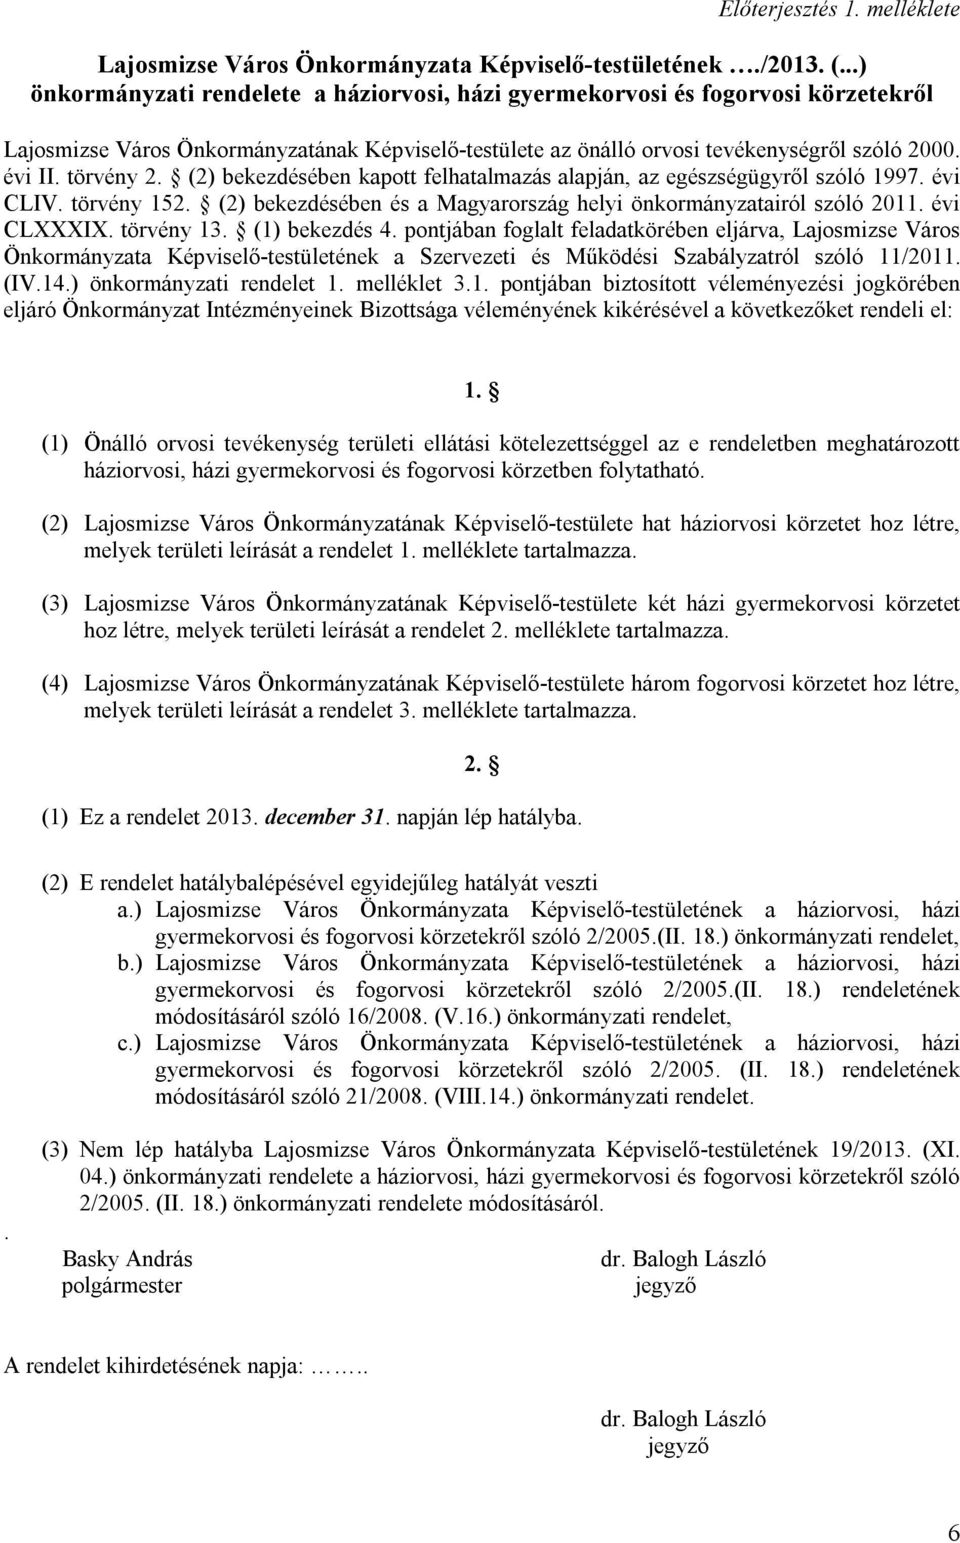 törvény 2. (2) bekezdésében kapott felhatalmazás alapján, az egészségügyről szóló 1997. évi CLIV. törvény 152. (2) bekezdésében és a Magyarország helyi önkormányzatairól szóló 2011. évi CLXXXIX.